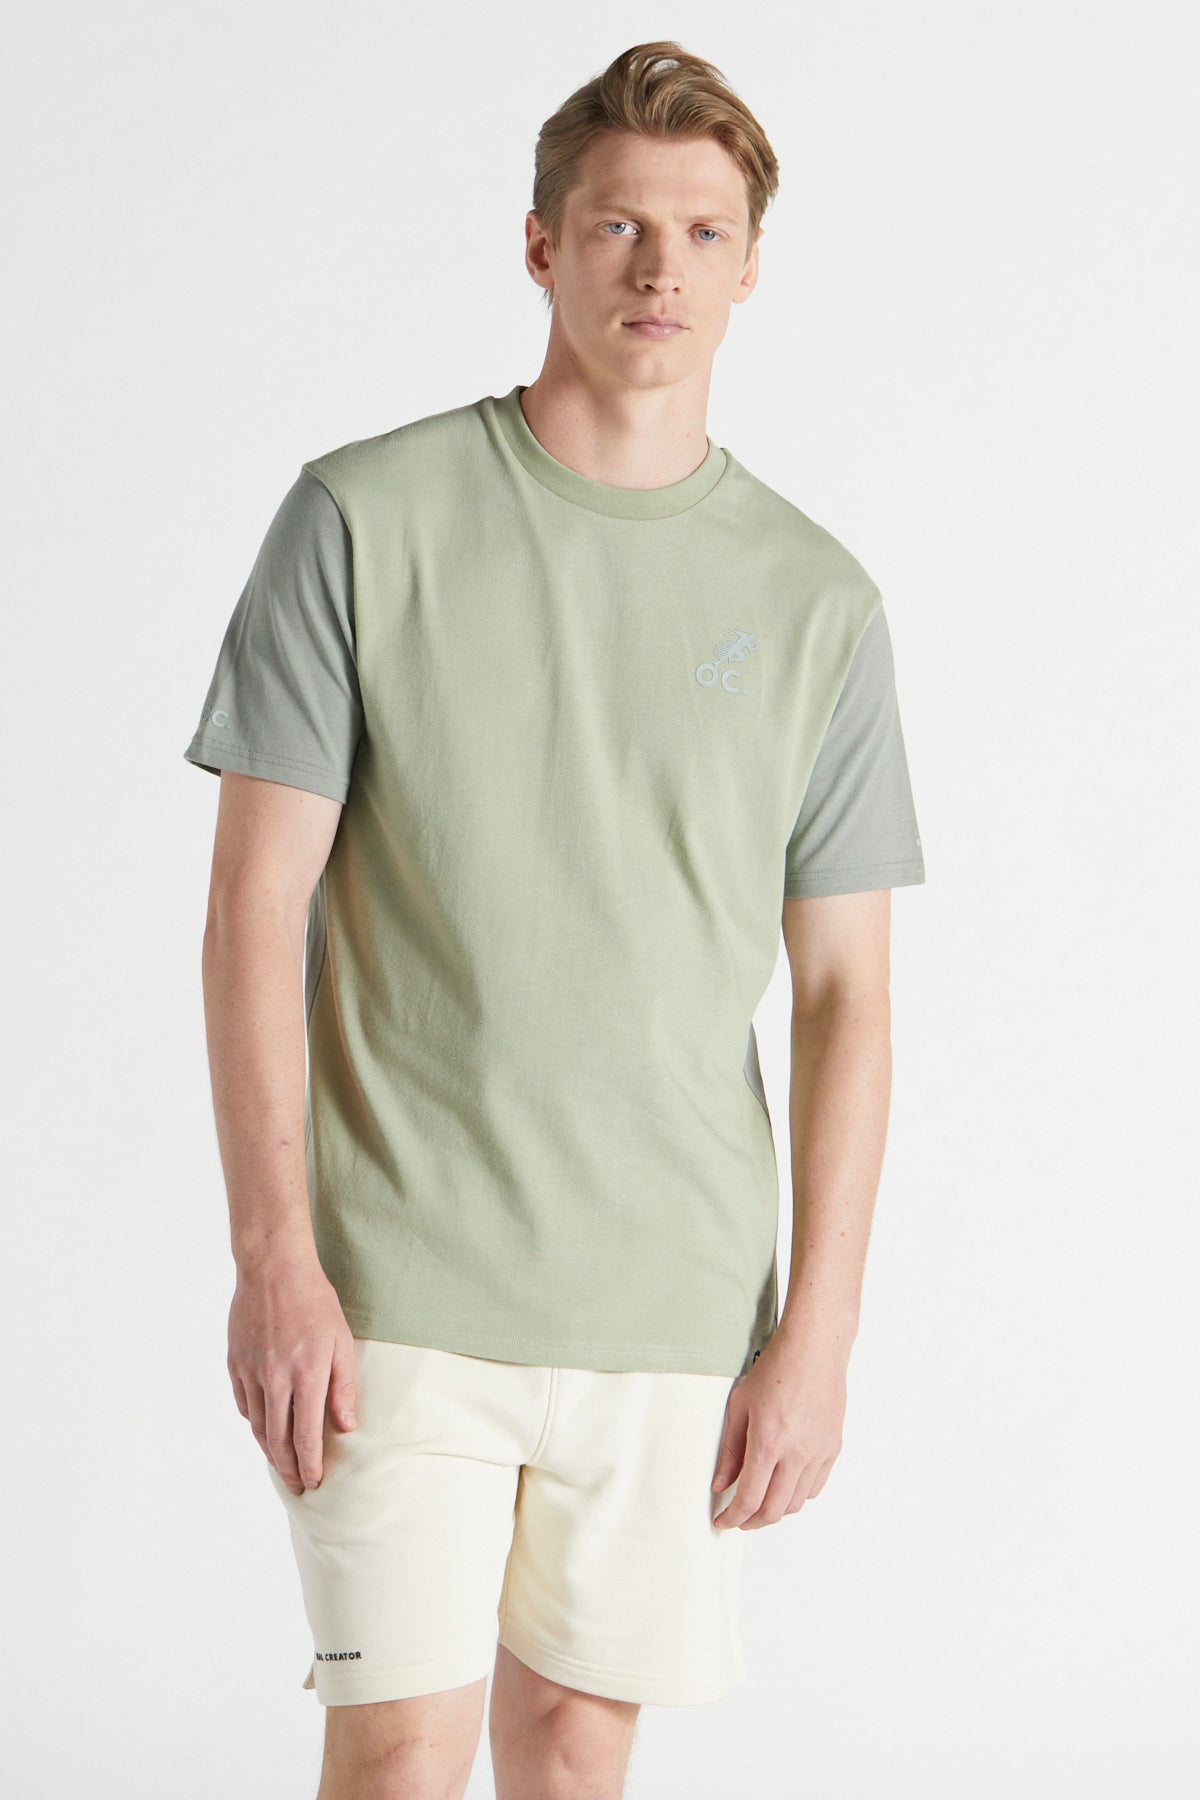 Colour Block T-shirt - Laurel Green